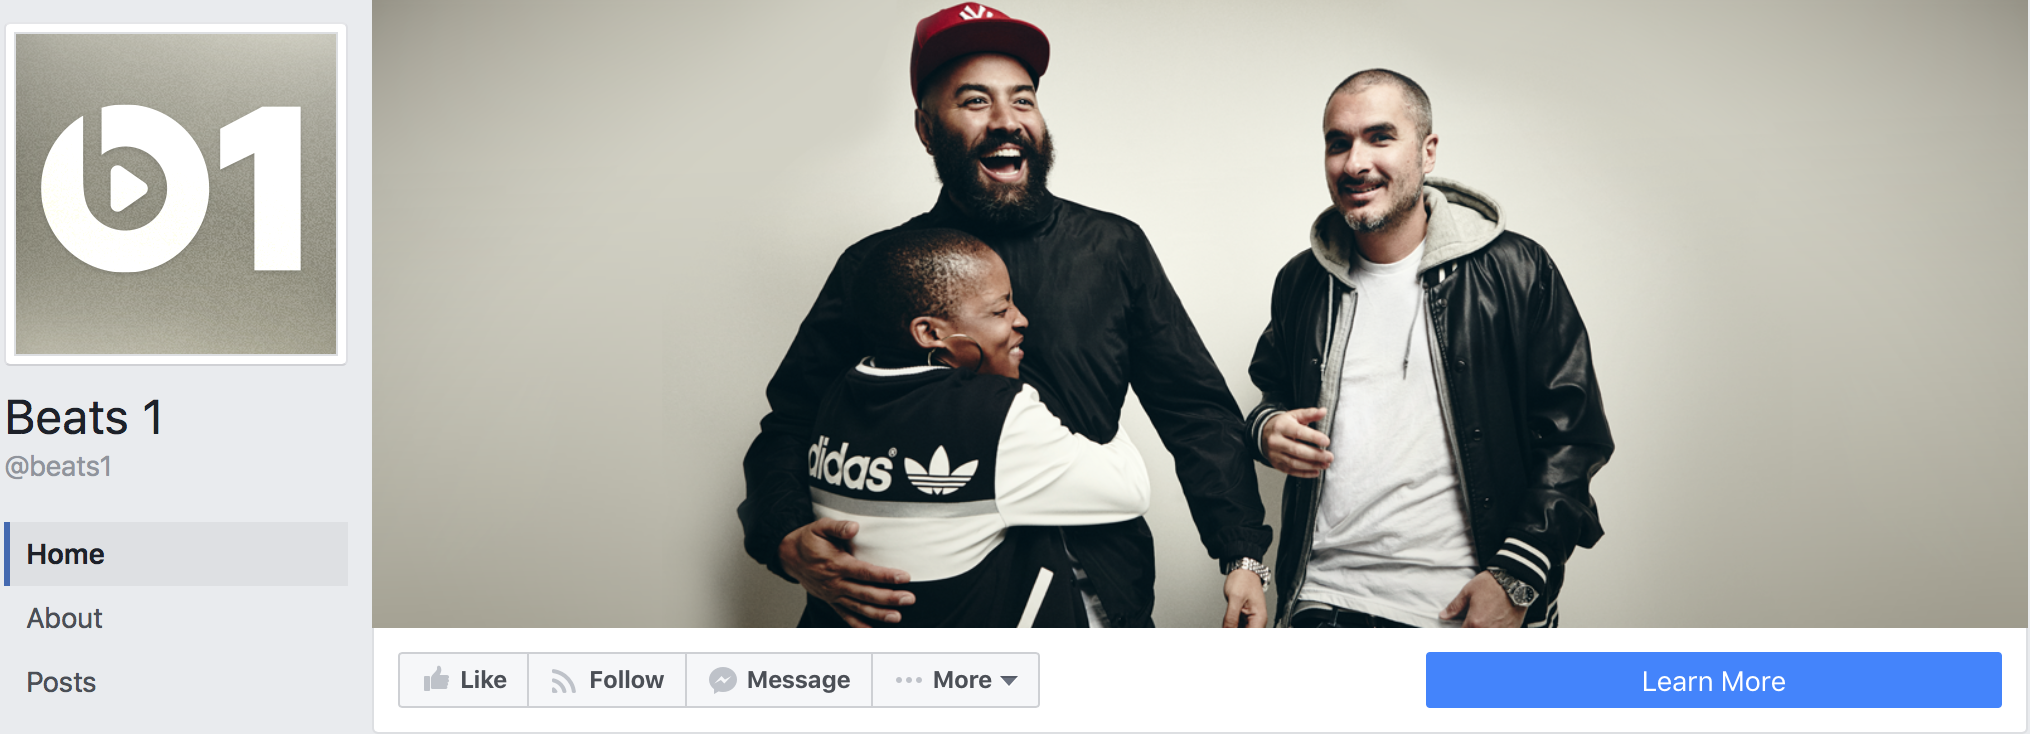 Apple ra mắt trang facebook chính thức cho Beats 1